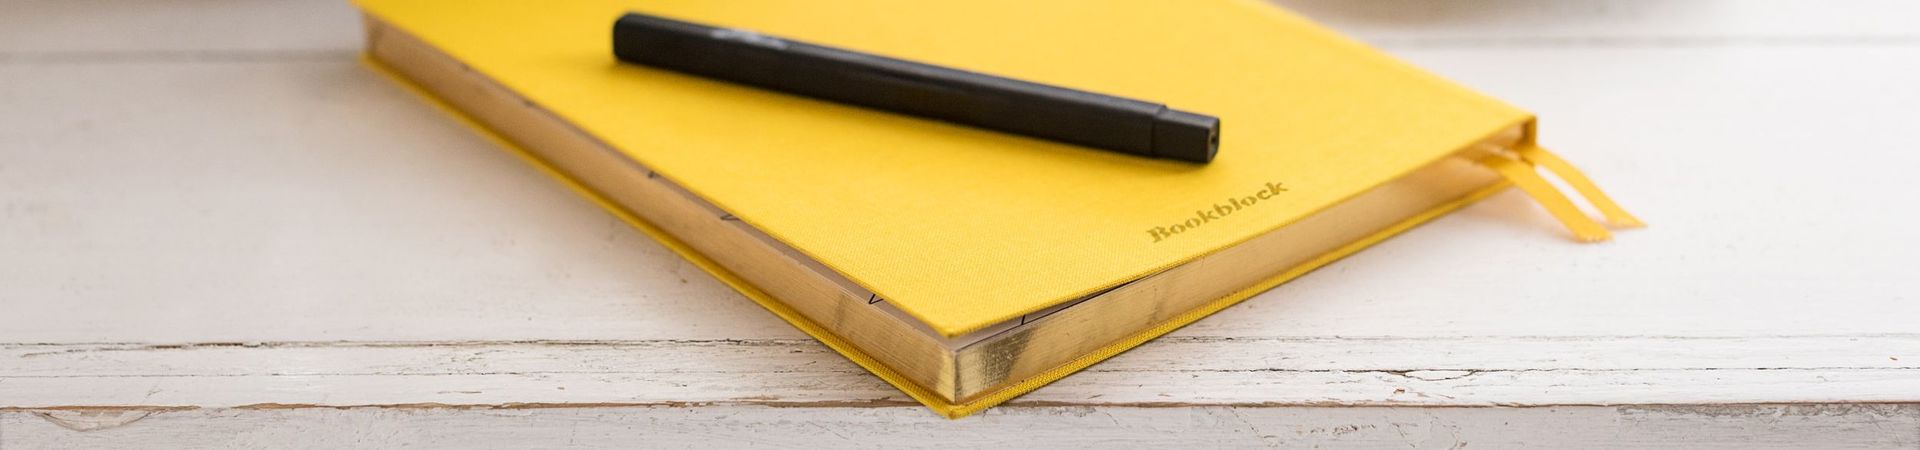 Gelbes Notizbuch und schwarzer Stift liegen auf einem Holztisch